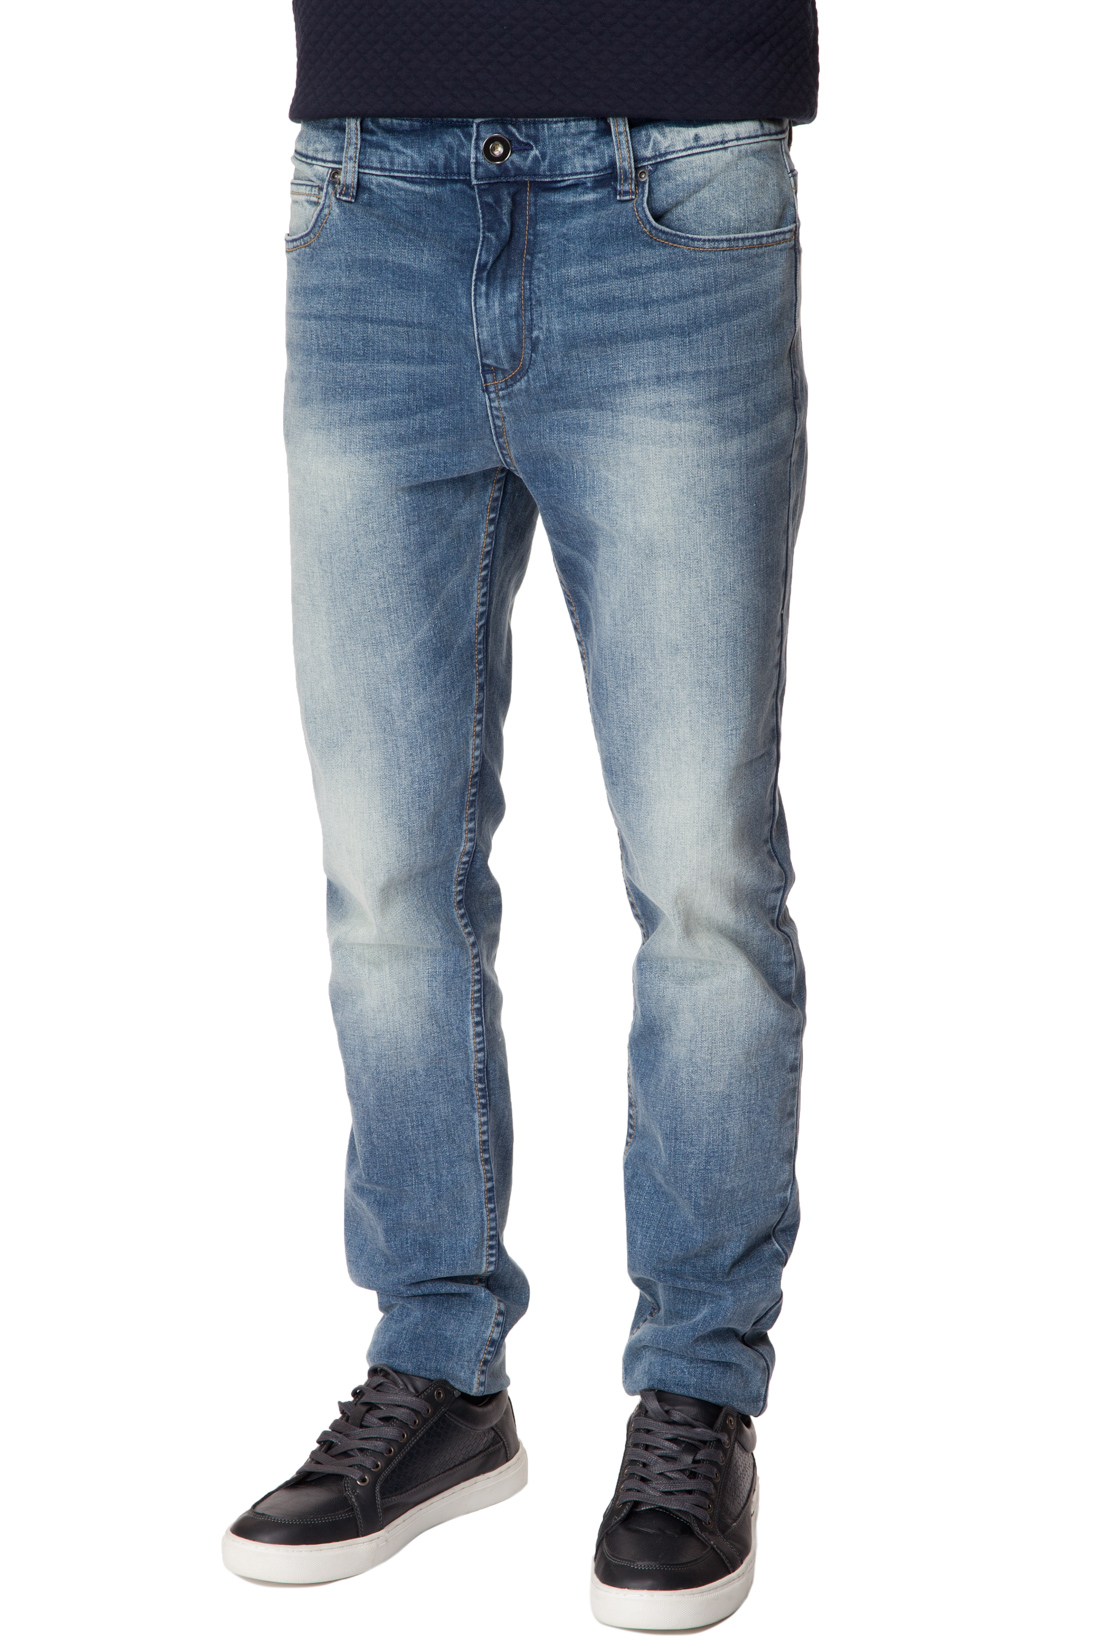 Зауженные джинсы с выбеленностями (арт. baon B807005), размер 33, цвет blue denim#голубой Зауженные джинсы с выбеленностями (арт. baon B807005) - фото 1